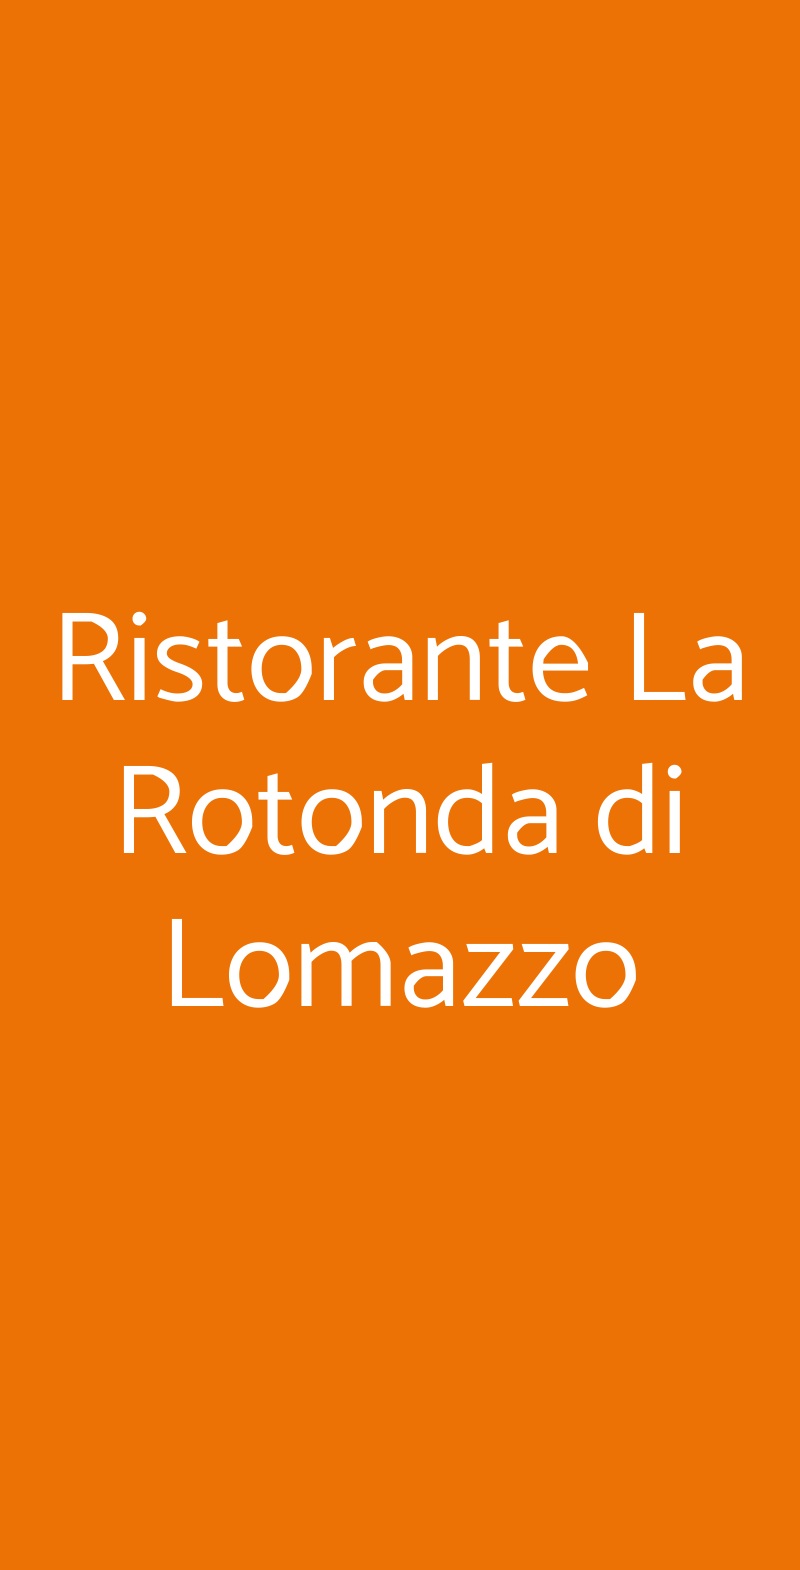 Ristorante La Rotonda di Lomazzo Lomazzo menù 1 pagina